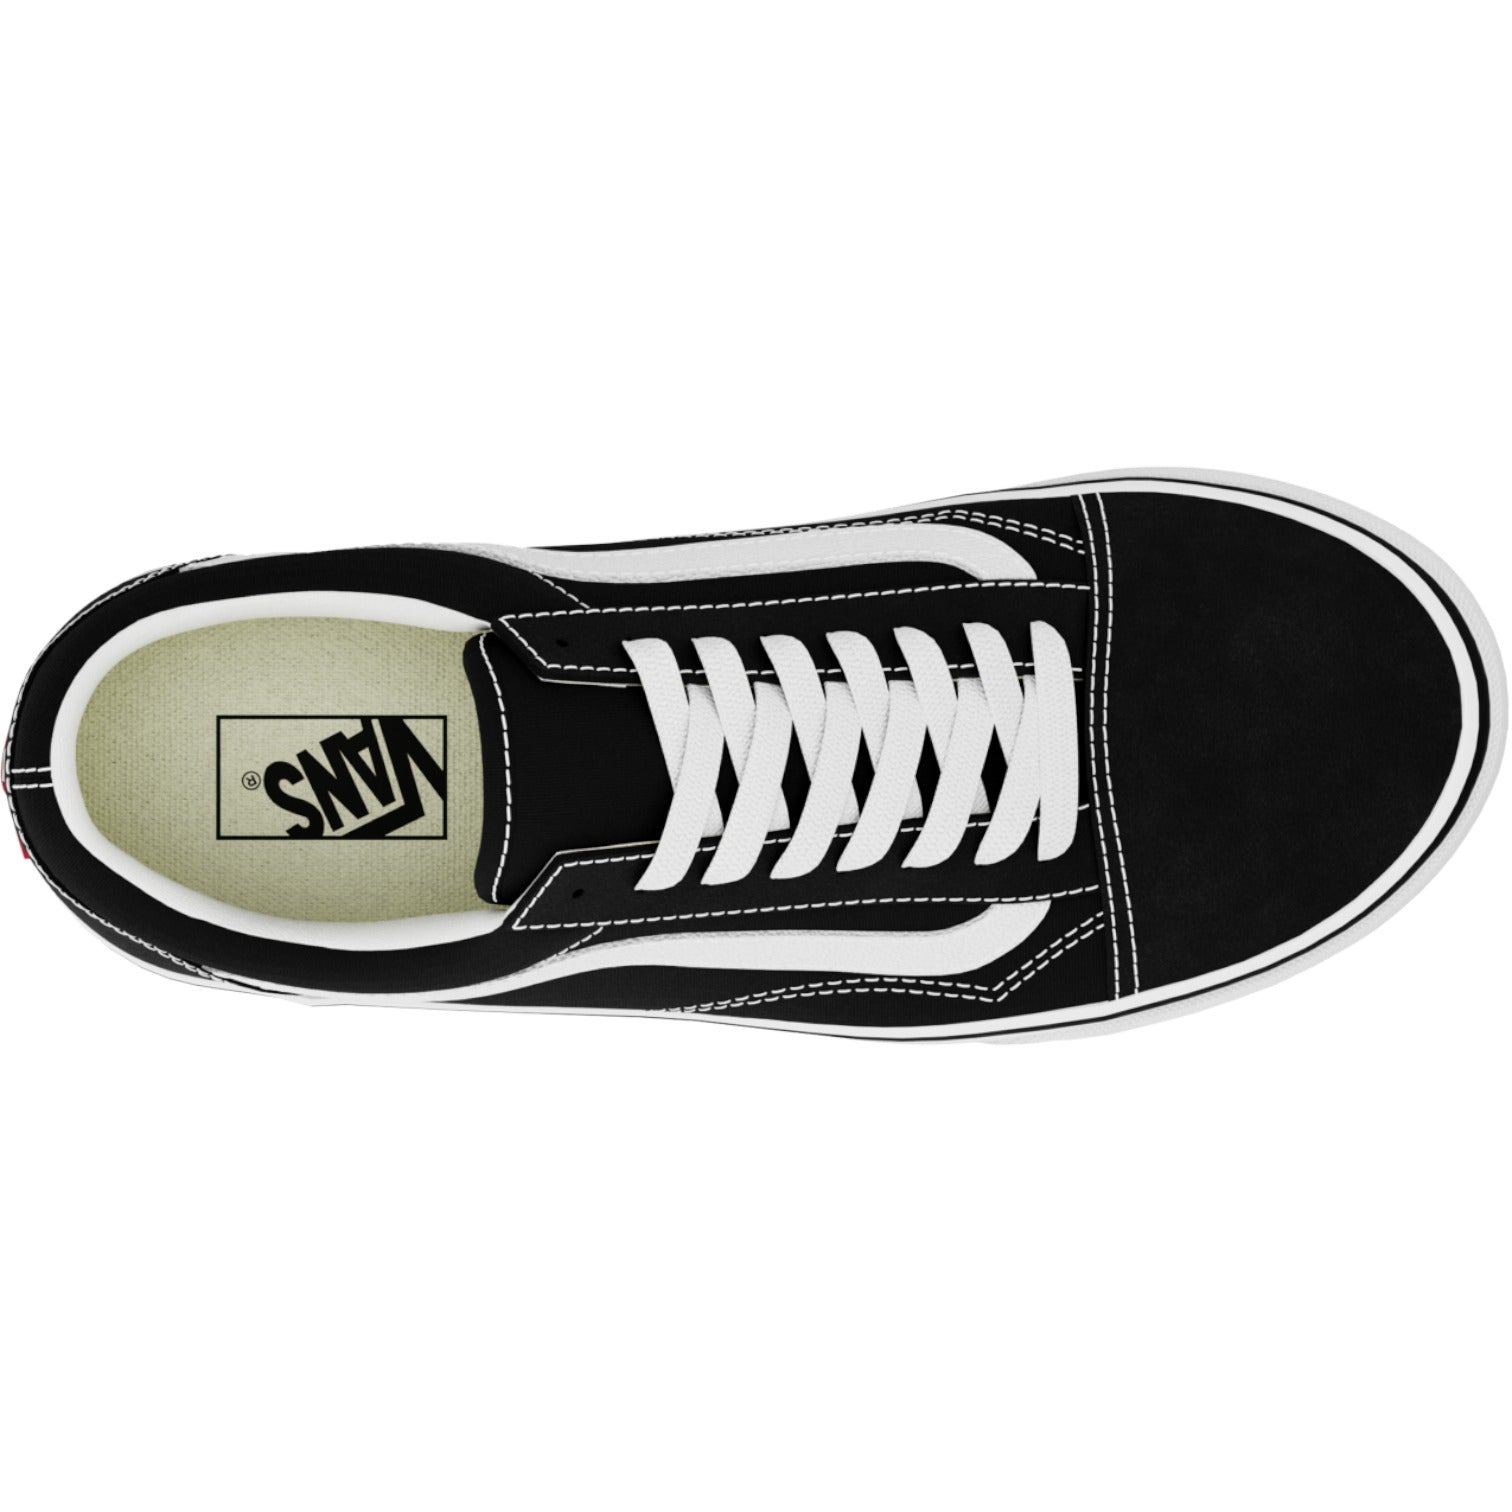 Vans Old Skool Shoes - Black/White